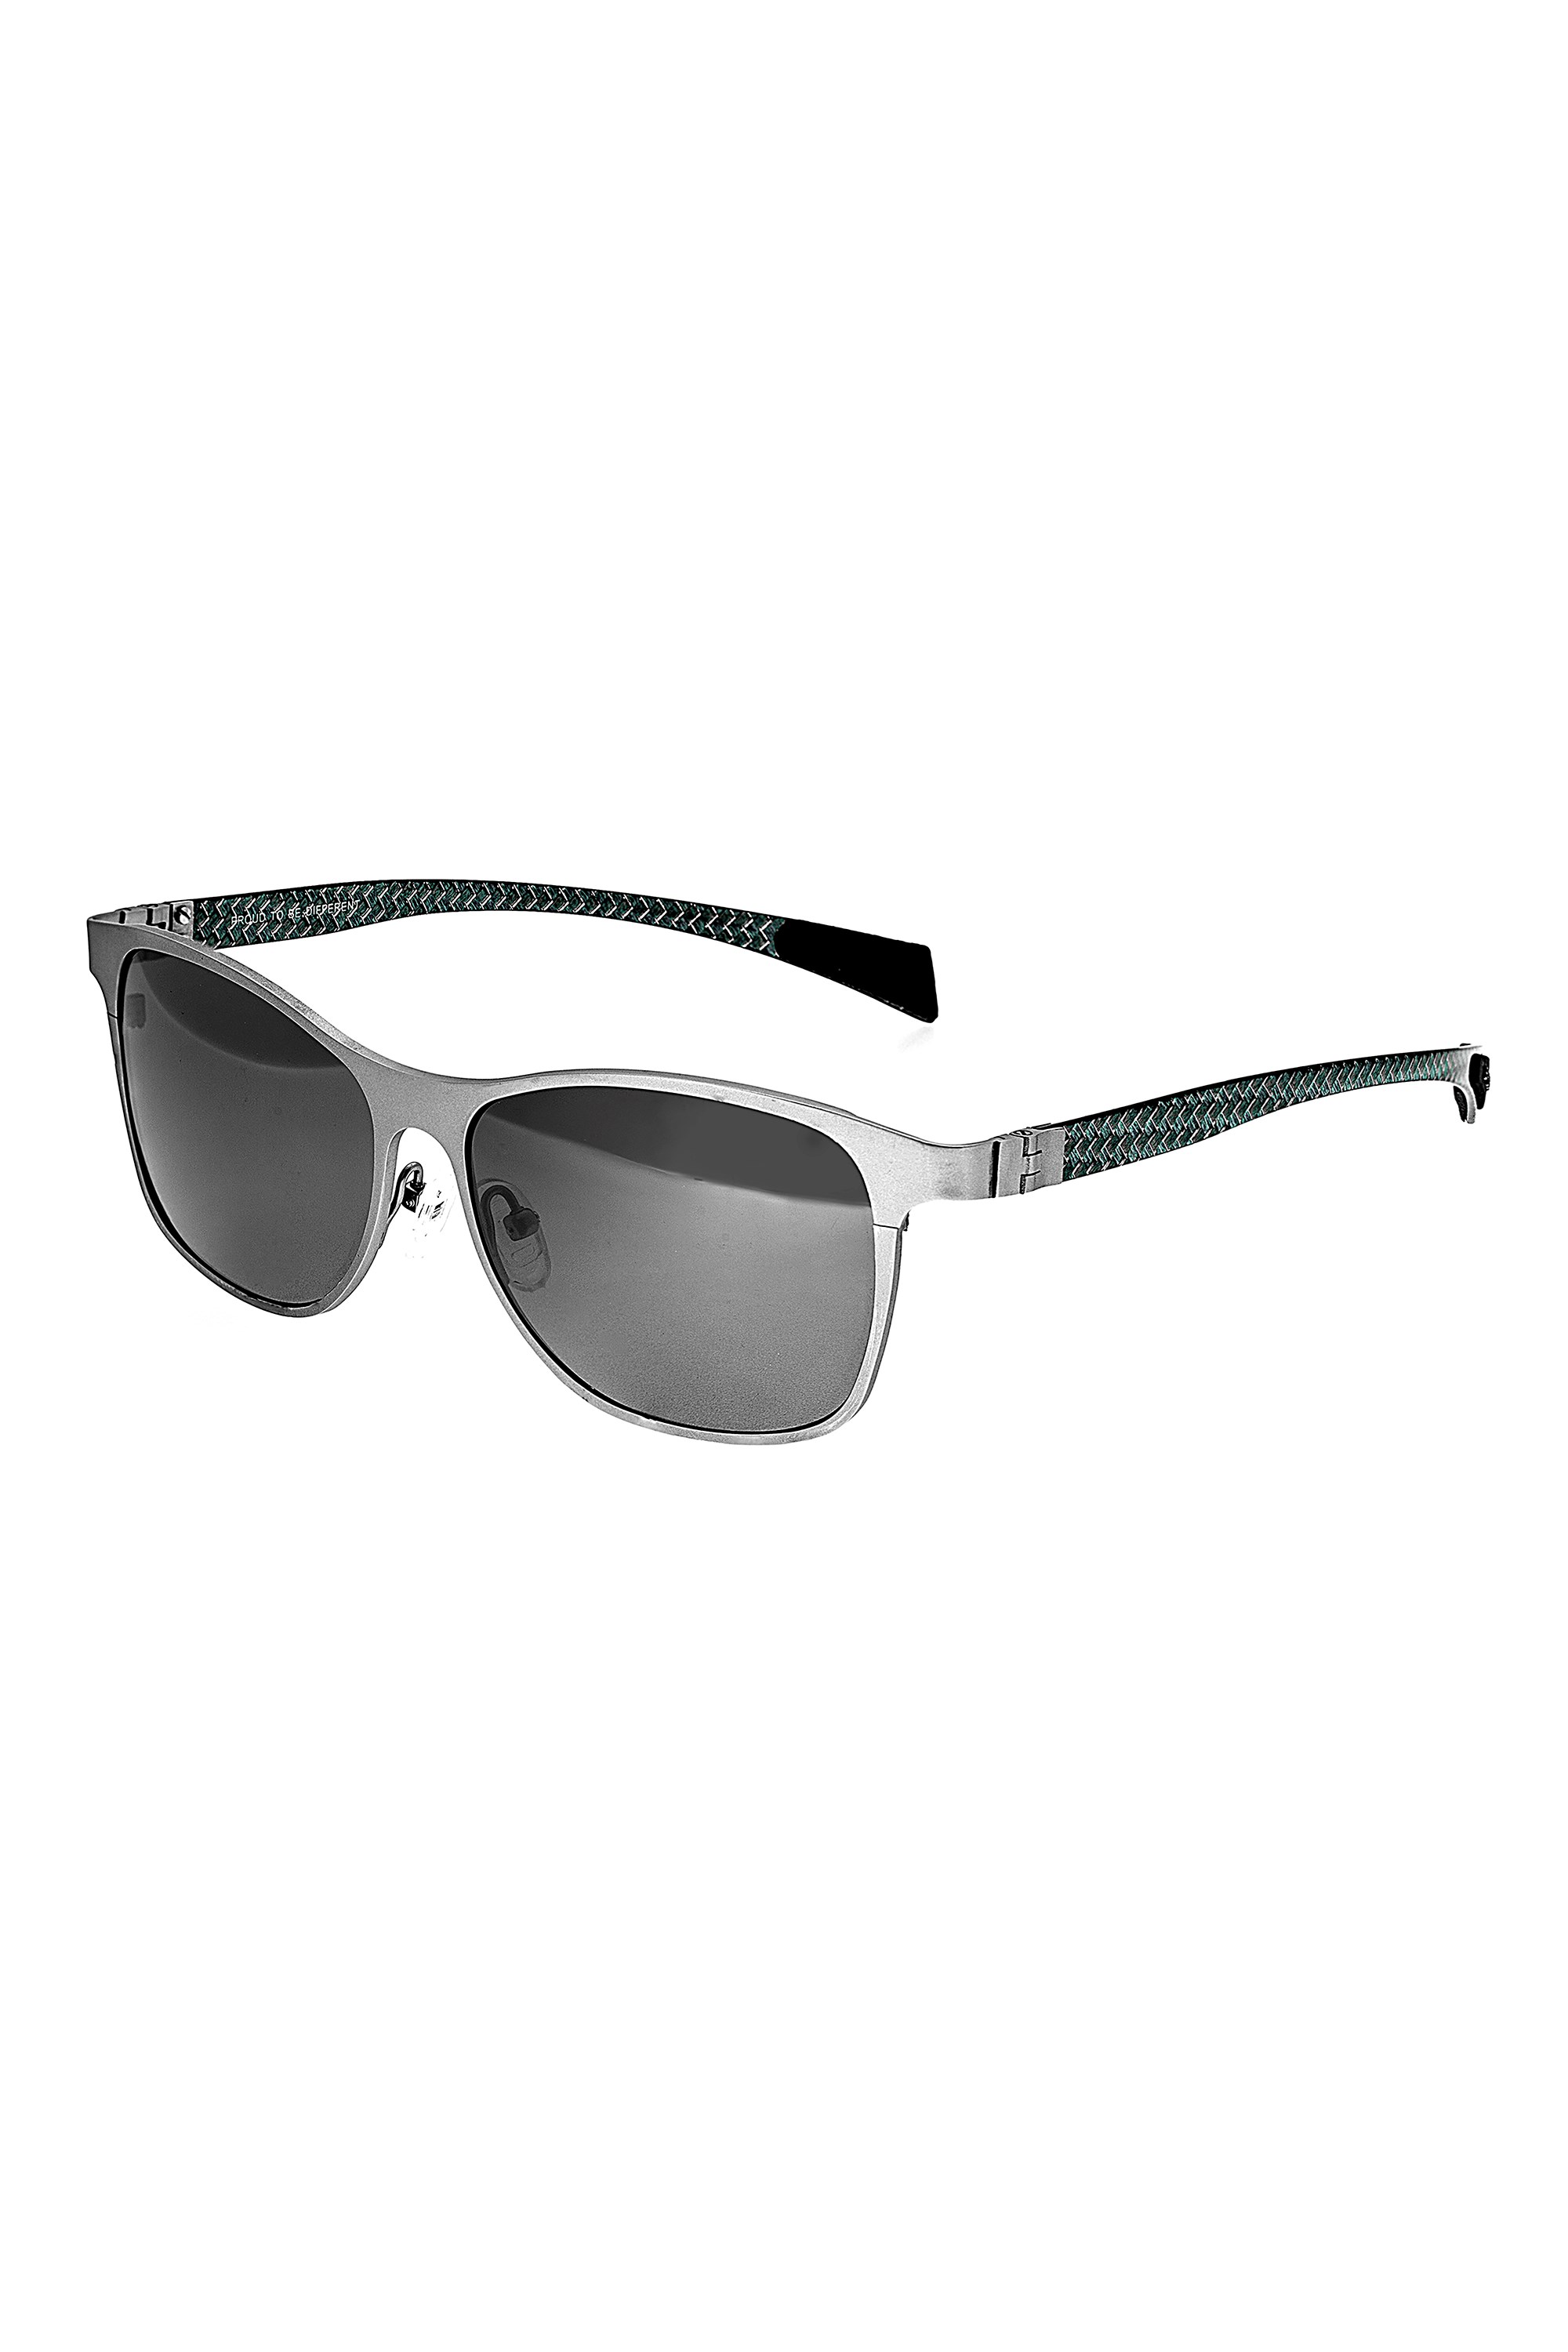 Templar Titanium Polarized Sunglasses -